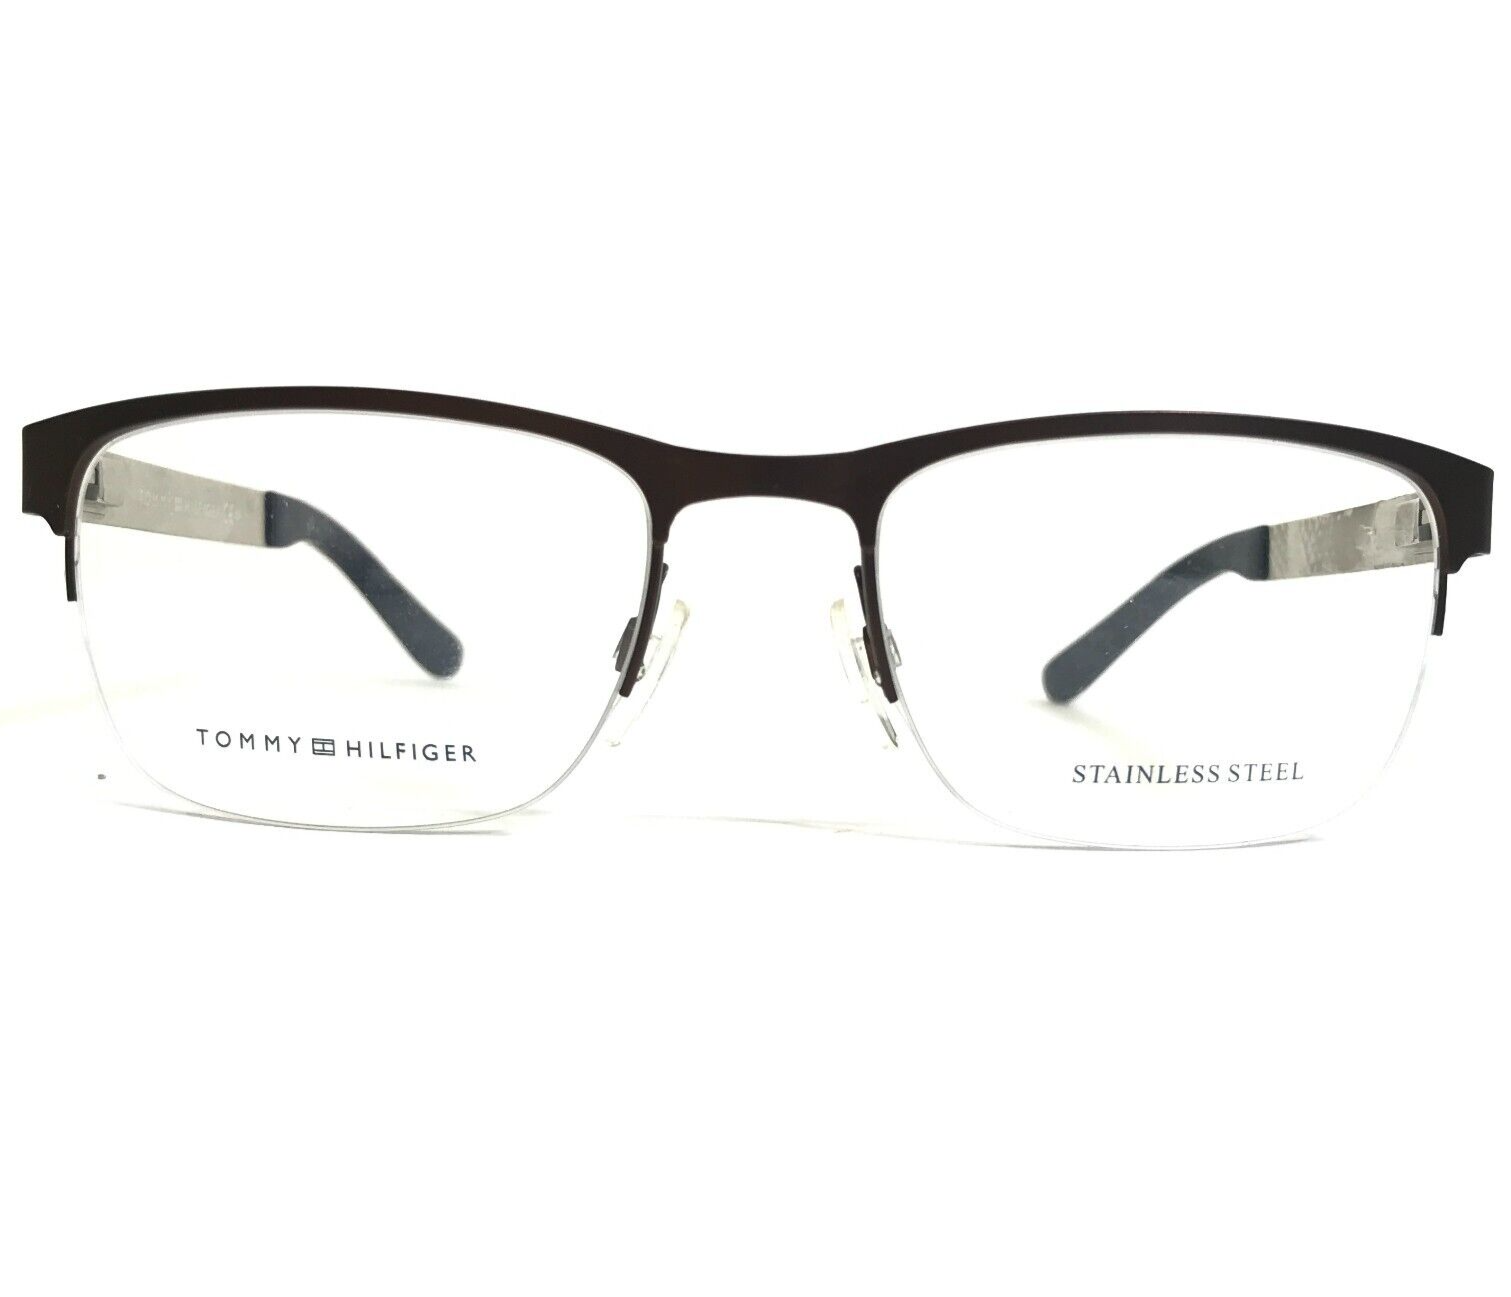 Primary image for Tommy Hilfiger Eyeglasses Frames TH 1324 0FY Brown Orange Square 52-19-145